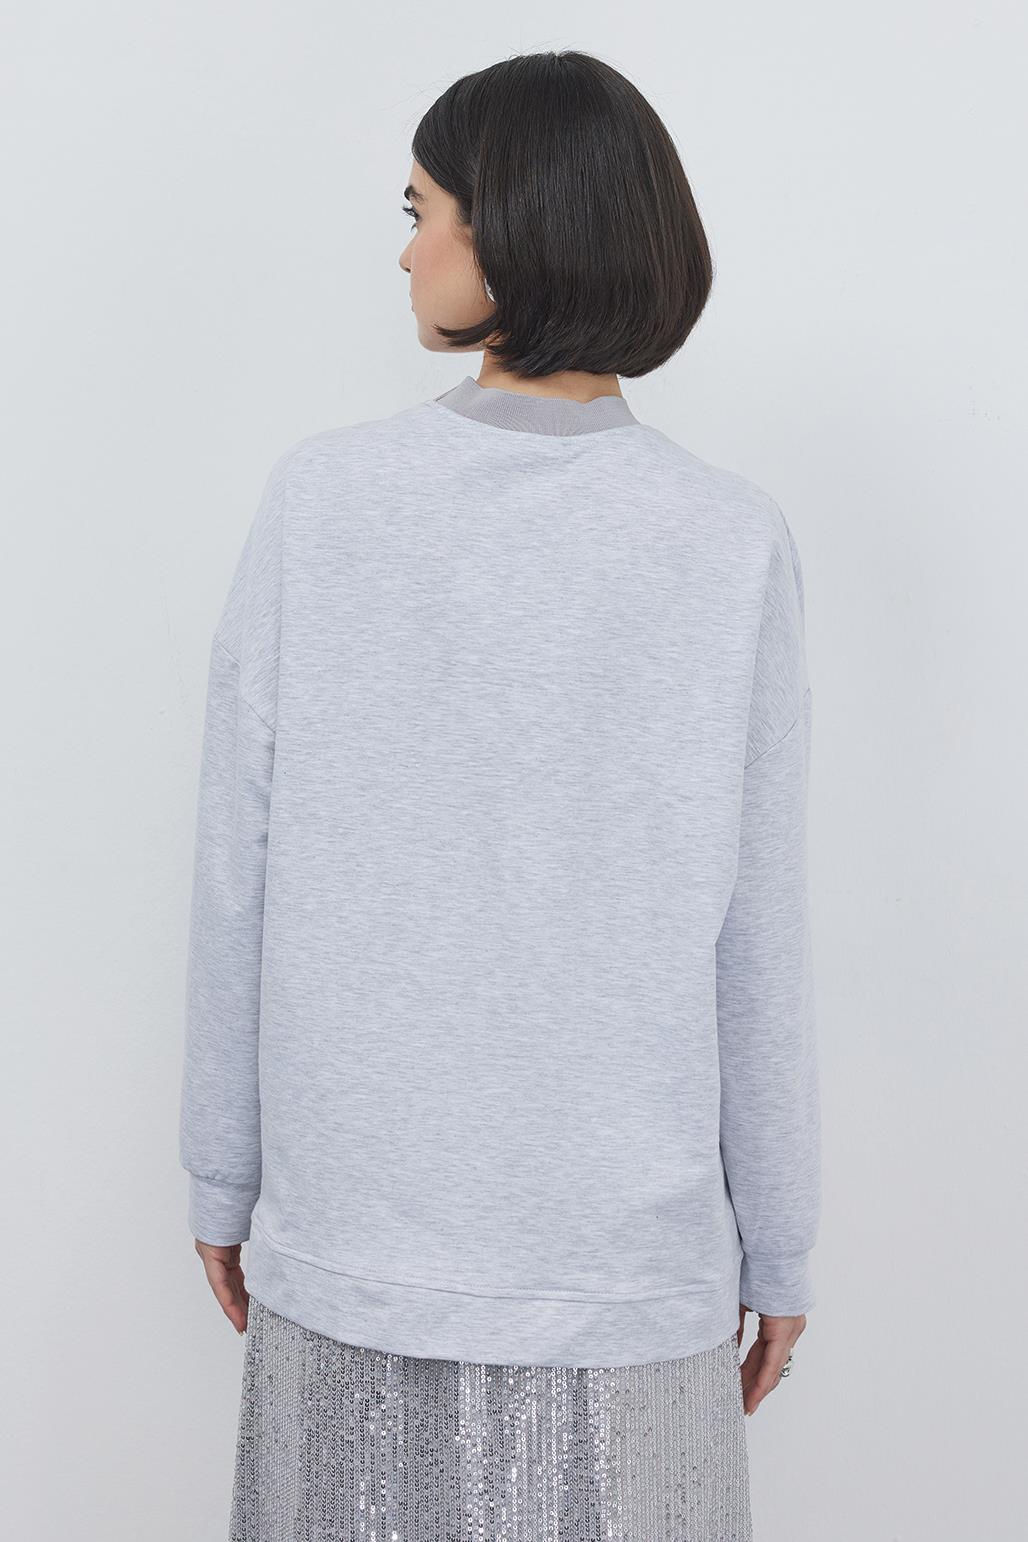 Poen Oversize Sweatshirt Gray